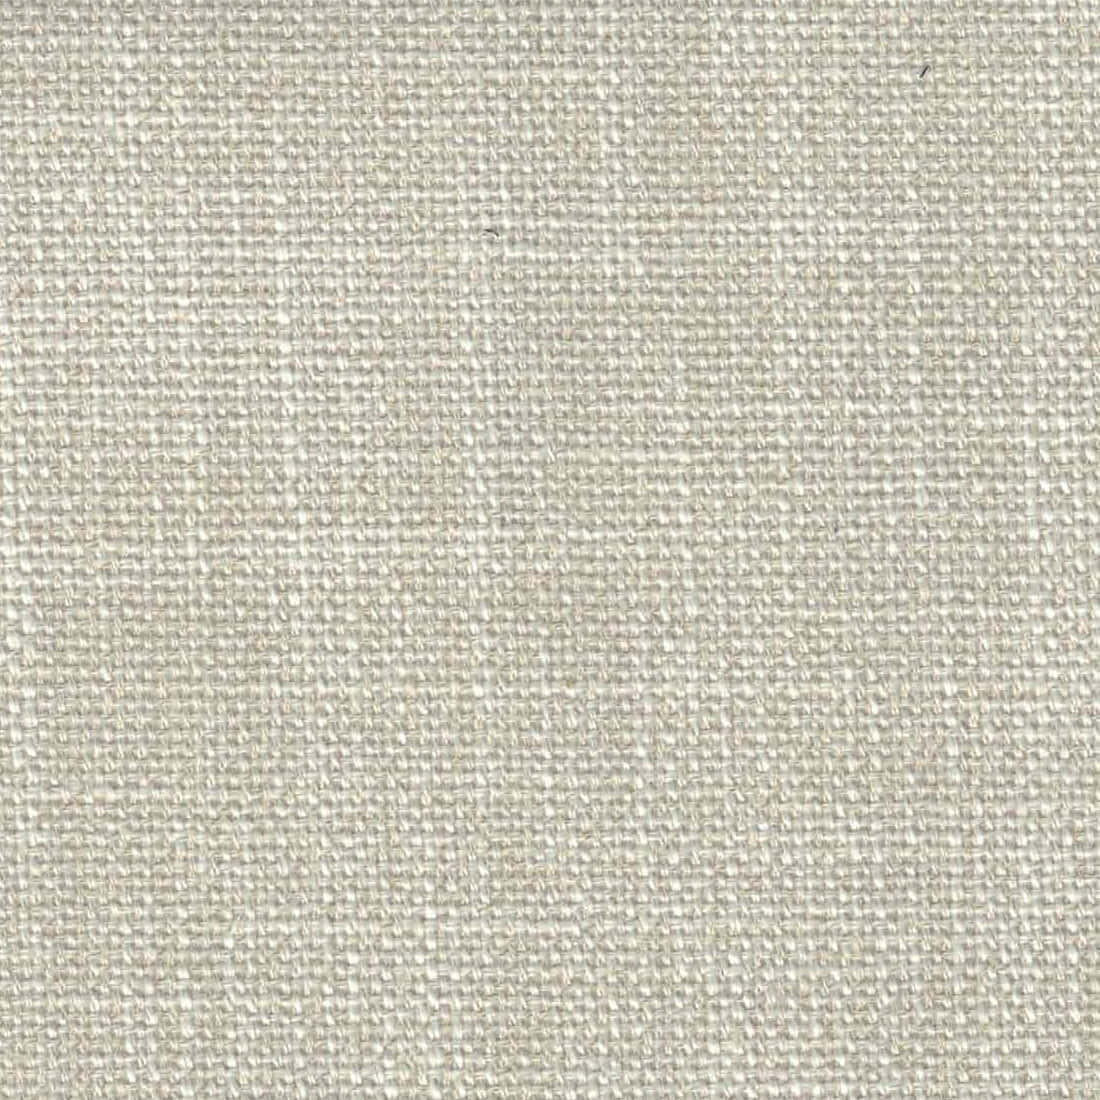 A Close Up Of A Beige Linen Fabric